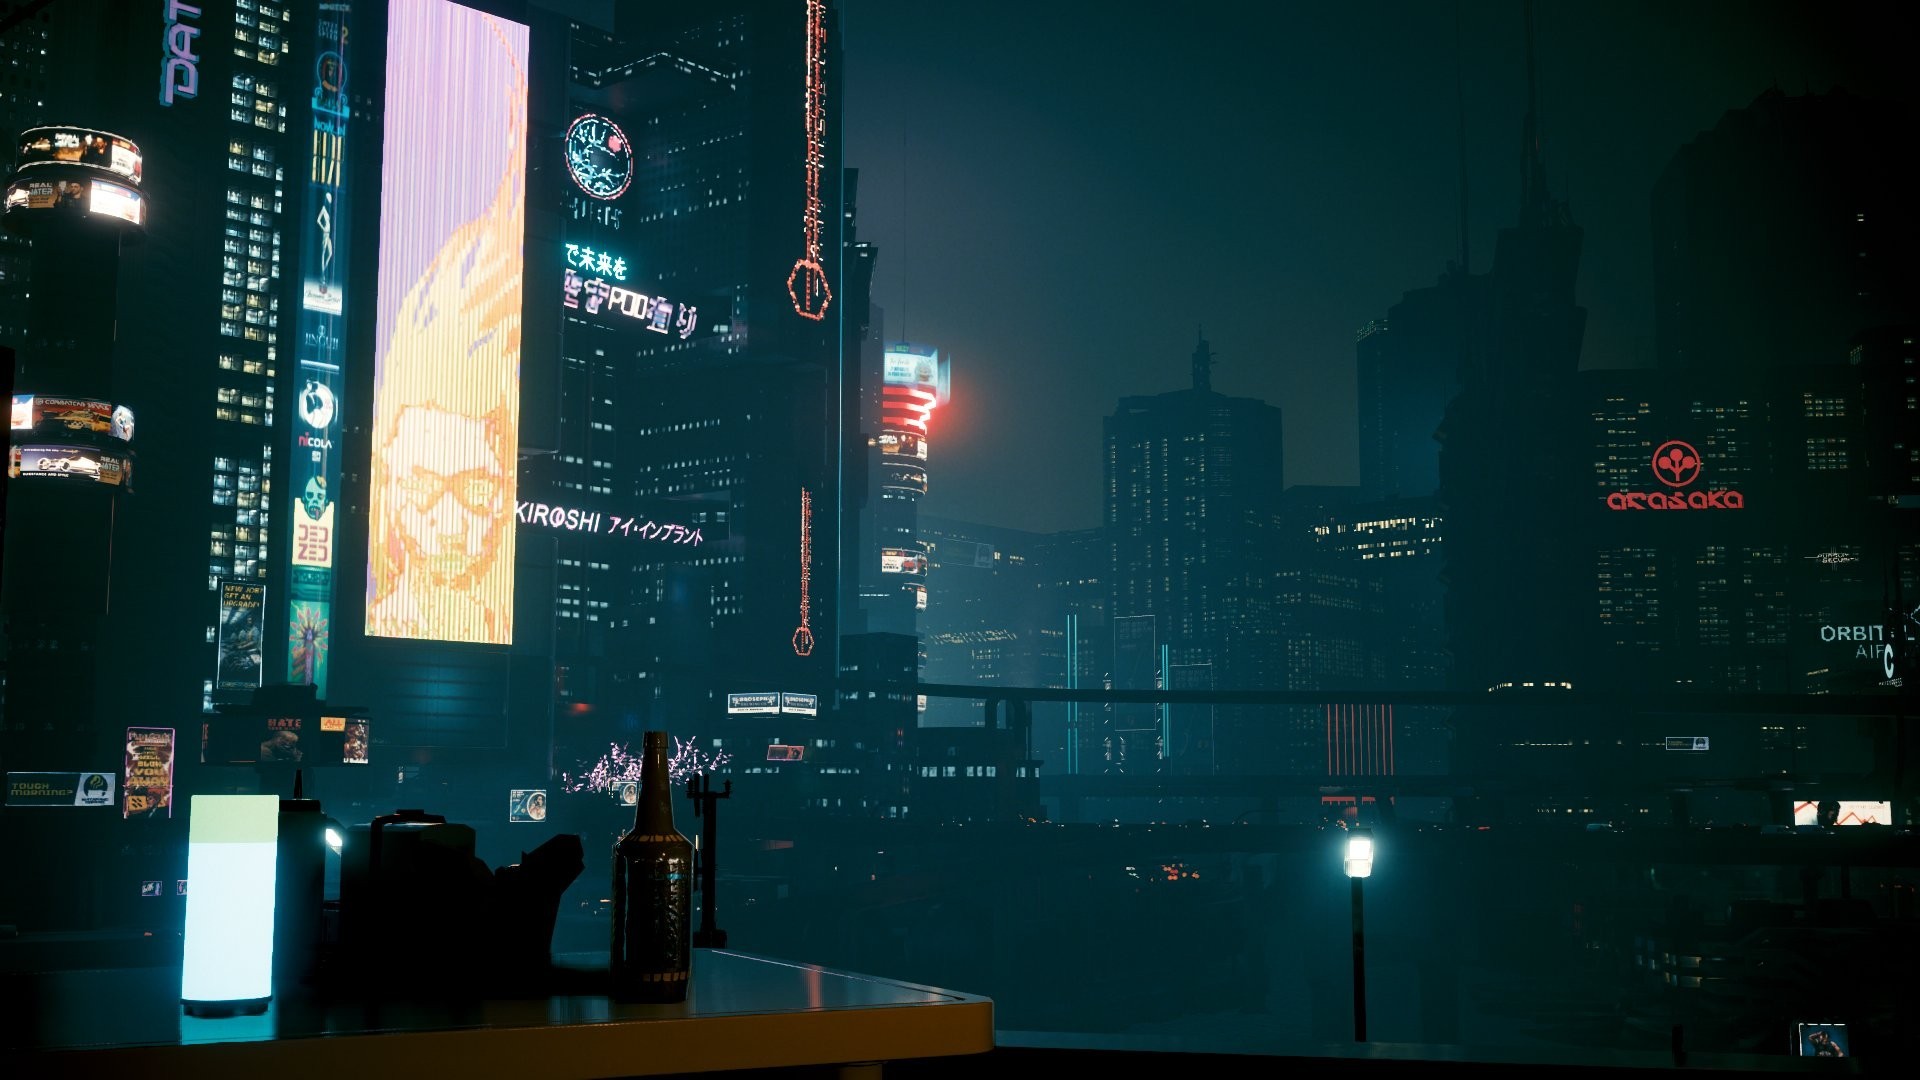 【PC游戏】夜之城好美!玩家分享《赛博2077》画质全部拉满的截图-第9张